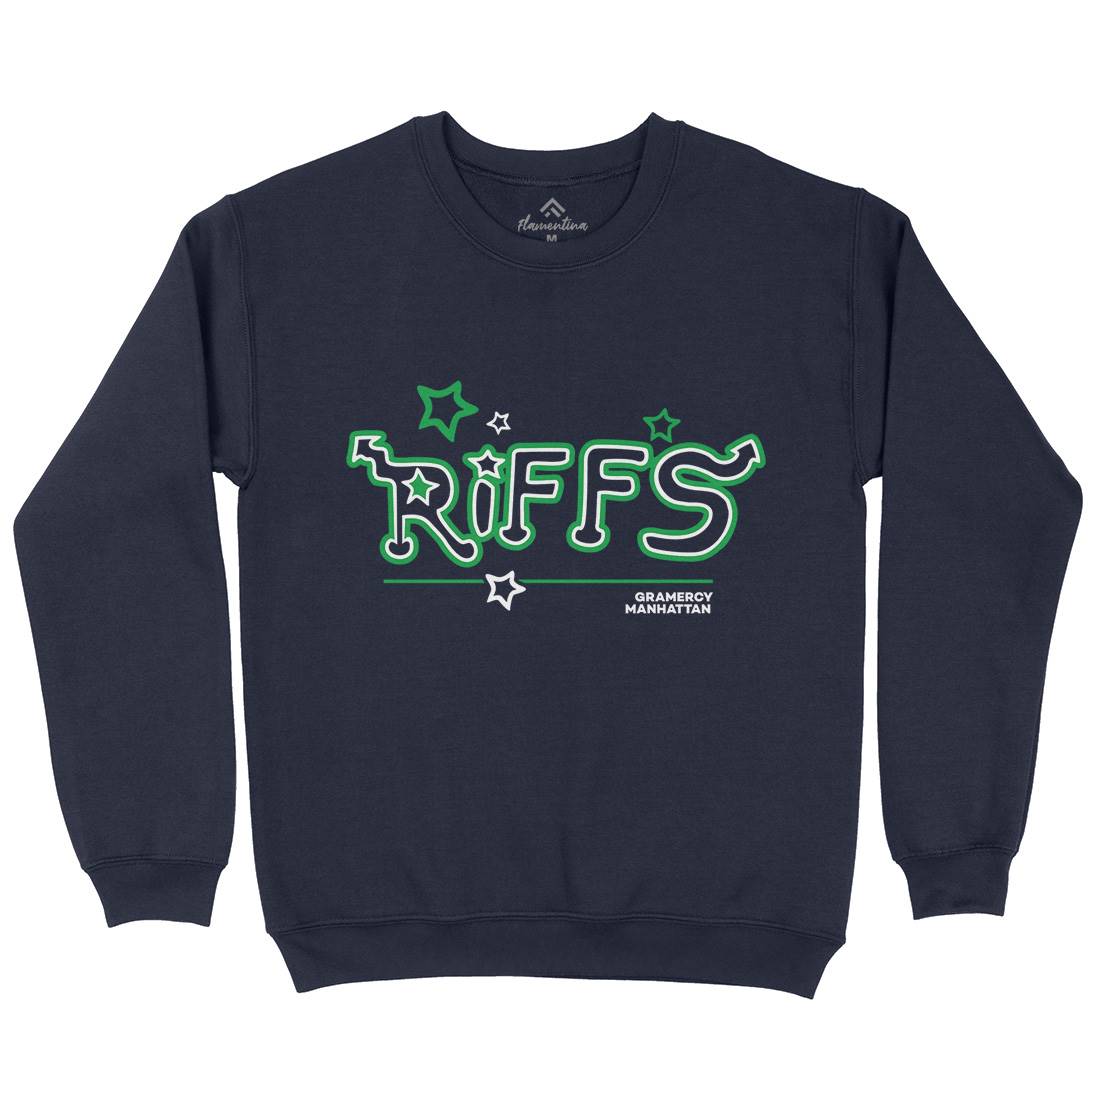 Riffs Kids Crew Neck Sweatshirt Retro D290